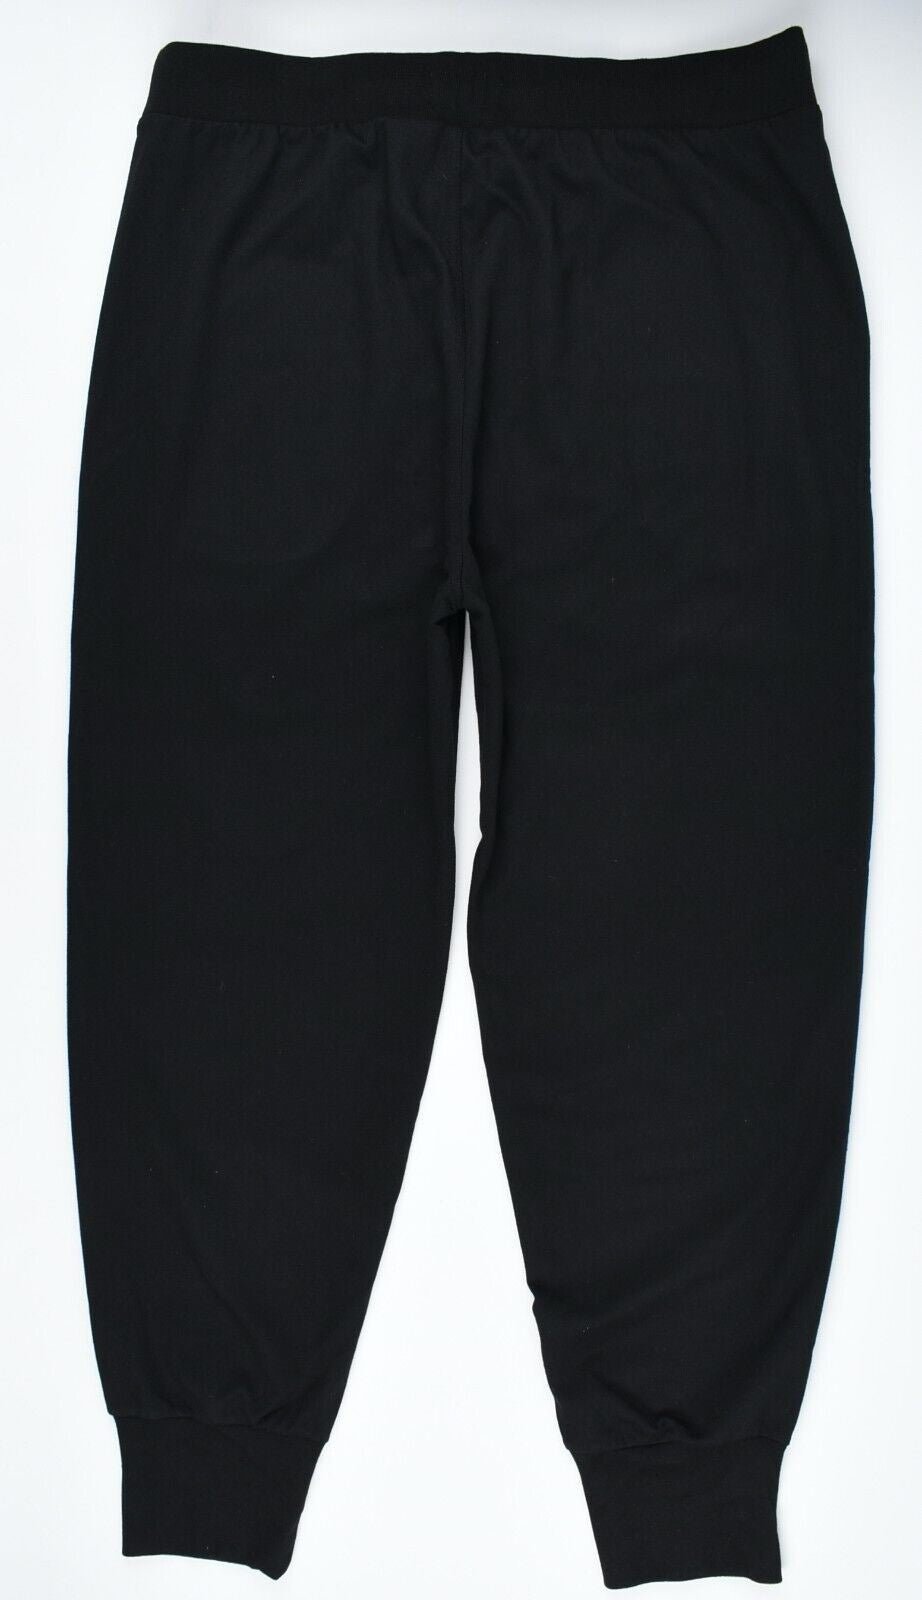 POLO RALPH LAUREN Men's Standard Fit Joggers, Black, size XL